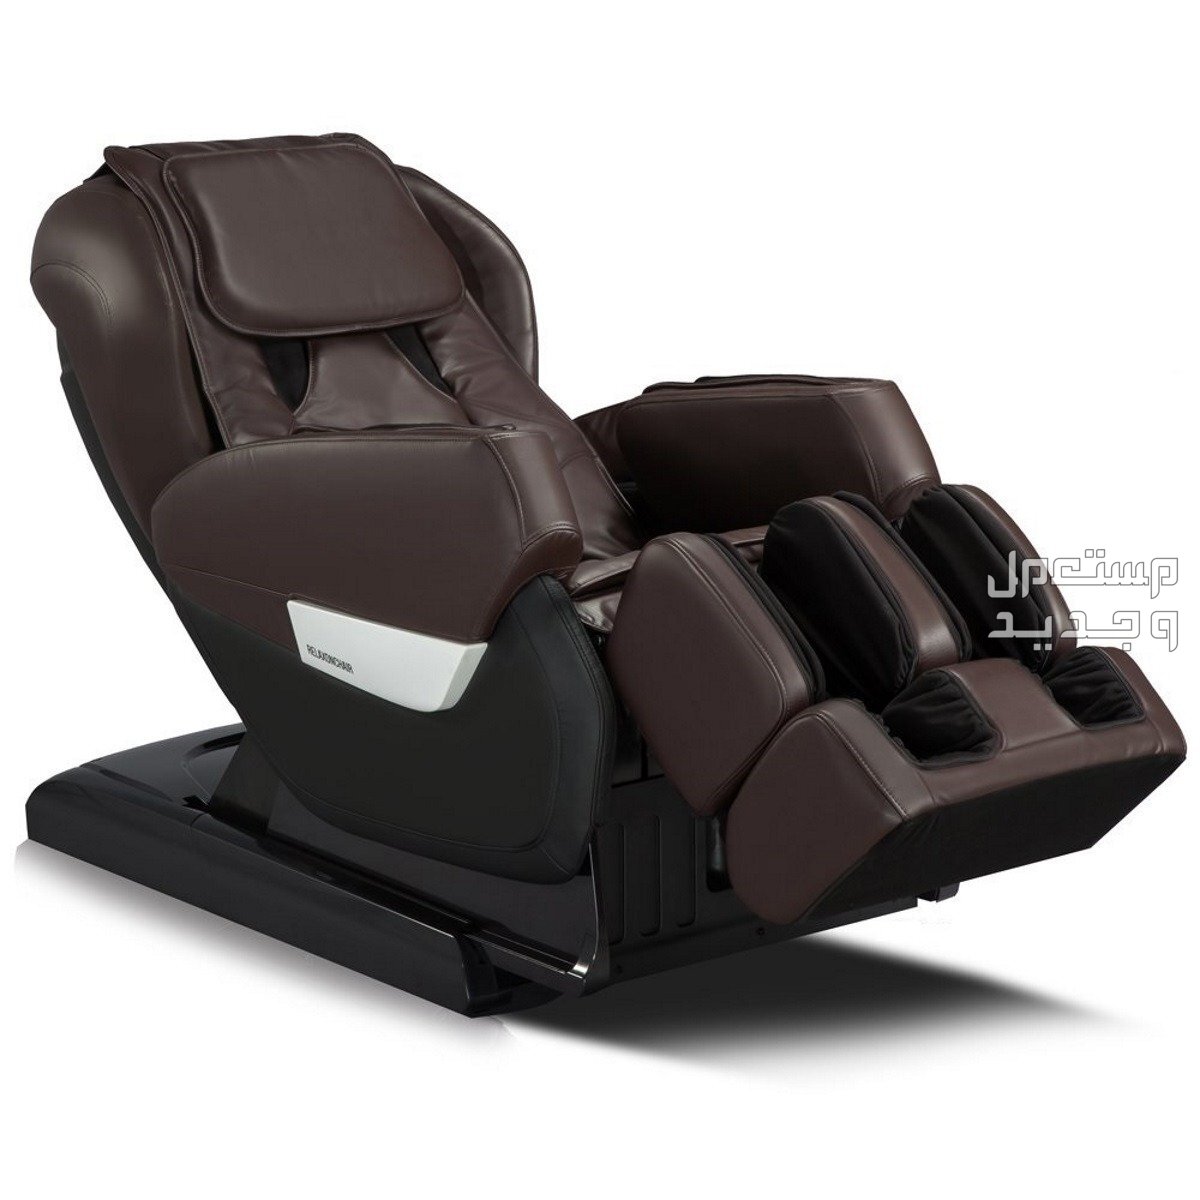 كرسي مساج كهربائي اليك 5 انواع مناسبة للمنزل كرسي مساج كهربائي لونه بني